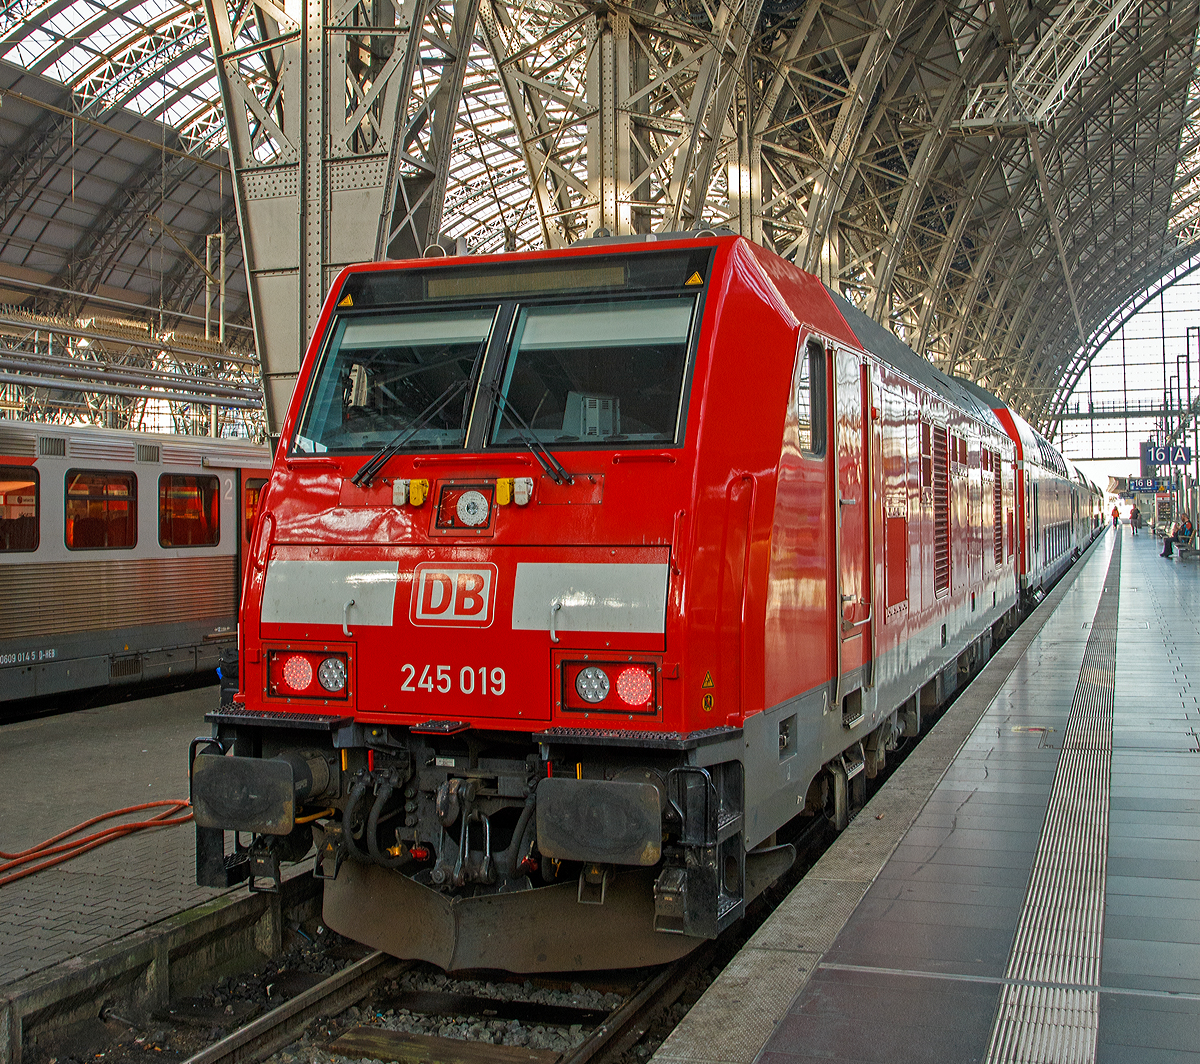 
Die DB Regio 245 019 (92 80 1245 019-5 D-DB) am 01.08.2019 mit einem Regionalzug im Hbf Frankfurt am Main.

Die TRAXX P160 DE ME wurde 2014 von der Bombardier Transportation GmbH in Kassel unter der Fabriknummer 35018 gebaut.

Die Lokomotiven der BR 245, vom Hersteller Bombardier als TRAXX P160 DE ME bezeichnet, sind vierachsige dieselelektrische ( ME ) Lokomotiven der Achsfolge Bo´Bo´ sind vorwiegend für den Personenverkehr, mit einer Höchstgeschwindigkeit bis zu160 km/h( P160 ), vorgesehen. Die Lok verfügen im Gegensatz zur Baureihe 246 (TRAXX P160 DE) nicht über einen Großdieselmotor, sondern über vier kleine Dieselmotoren und Generatoren ( ME  = Multi Engine). Die bei verschiedenen industriellen Anwendungen bereits eingesetzten, vier Dieselmotoren vom Typ CAT C18 ACERT besitzen eine Nennleistung von jeweils 563 kW (765 PS). Diese werden kostengünstig in großen Stückzahlen gefertigt und erfüllten bereits die EU-Abgasnorm der Stufe IIIB ohne aufwändige Nachentwicklungen.Durch das elektronisch gesteuerte Zu- und Abschalten einzelner Motoren im Betrieb soll Kraftstoff gespart, sowie eine gleichmäßige Abnutzung erreicht werden. Bei der ersten Serie der für die DB gelieferten Lokomotiven (245 001–020) wird das Abschalten einzelner Dieselmotoren betrieblich nicht benötigt, stattdessen wurde das Motor-Management verändert.

Über 70 Prozent der Bauteile sollen aus dem bestehenden Traxx-Programm stammen. Auch der Lokomotivkasten ist aus der Traxx-Familie abgeleitet. Die DB wählte die TRAXX P160 DE ME als Nachfolgemuster für die Baureihe 218 und schloss 2011 einen Rahmenvertrag mit BOMBARDIER über die Beschaffung von 200 Loks, die als Baureihe 245 geführt wurden, ab.

Als weiterer Vorteil gelten die leichte Austauschbarkeit der Motor-Generator-Einheiten sowie die hohe Ausfallsicherheit der Loks. Dabei wurde jeder Motor mit einem permanent erregten Generator in einem  Power Pack  zusammengefasst, das sich als komplette Einheit austauschen lässt. Auf jeder Fahrzeugseite sind zwei Power Packs angeordnet, der gesamte Maschinenraum ist von einem Mittelgang längs durchzogen.

TECHNISCHE DATEN der BR 245 DB Regio-Version:
Hersteller: Bombardier Transportation
Baujahre: ab 2012
Spurweite: 1.435 mm
Achsfolge: Bo´Bo´
Länge über Puffer: 18.900 mm
Drehzapfenabstand: 10.440 mm (virtuell)
Achsabstand im Drehgestell: 2.600 mm
Treibraddurchmesser: 1.250 mm (neu) / 1.170 mm (abgenutzt)
Breite: 2.977 mm
Höhe: 4.256 mm
Gewicht: 81 t (DB Version)
Radsatzlast: 21 t
Maximale Geschwindigkeit: 160 km/h
Anfahrzugkraft: 300 kN
Bremskraft: 150 kN
Kraftübertragung: dieselelektrisch
Leistung: 4 x 563 kW (765 PS) = 2.252 kW (3.062 PS)
Dieselmotore: 4 x 6-Zylinder Caterpillar CAT C18 ACERT
Tank: 2.700 l (bei DB Regio), DB SyltShuttle 4.230 l
Antrieb: Tatzlagerantrieb
Bauart der Bremsen: Druckluftbremse, Feststellbremse, Dynamische Bremse
